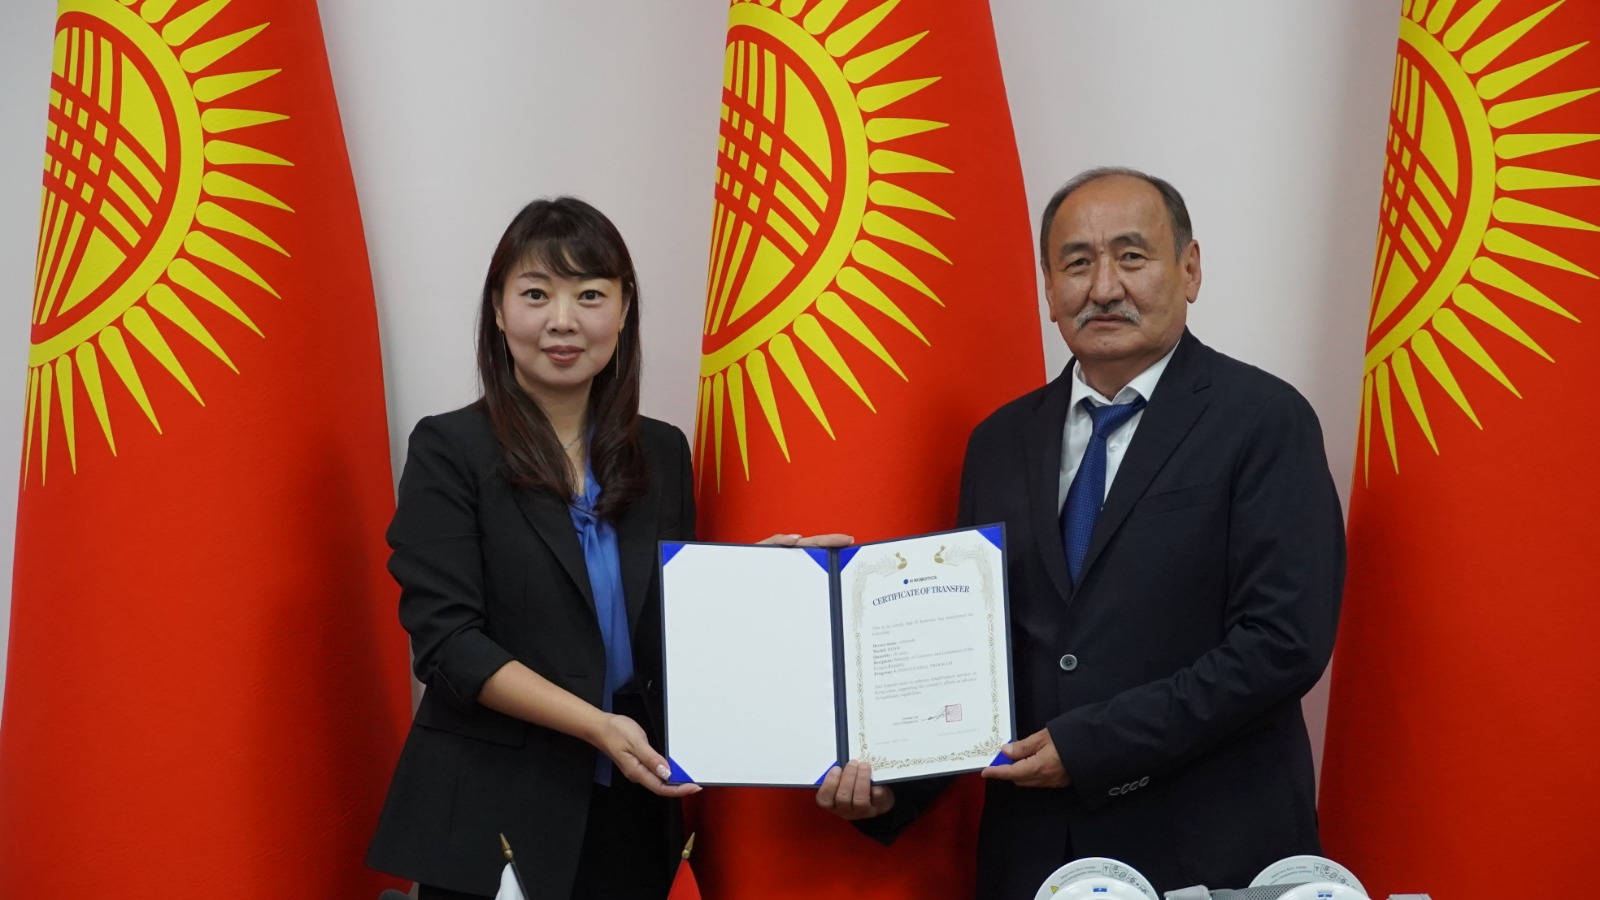 Минздрав Кыргызстана получит роботизированное реабилитационное устройство от корейской компании H-Robotics